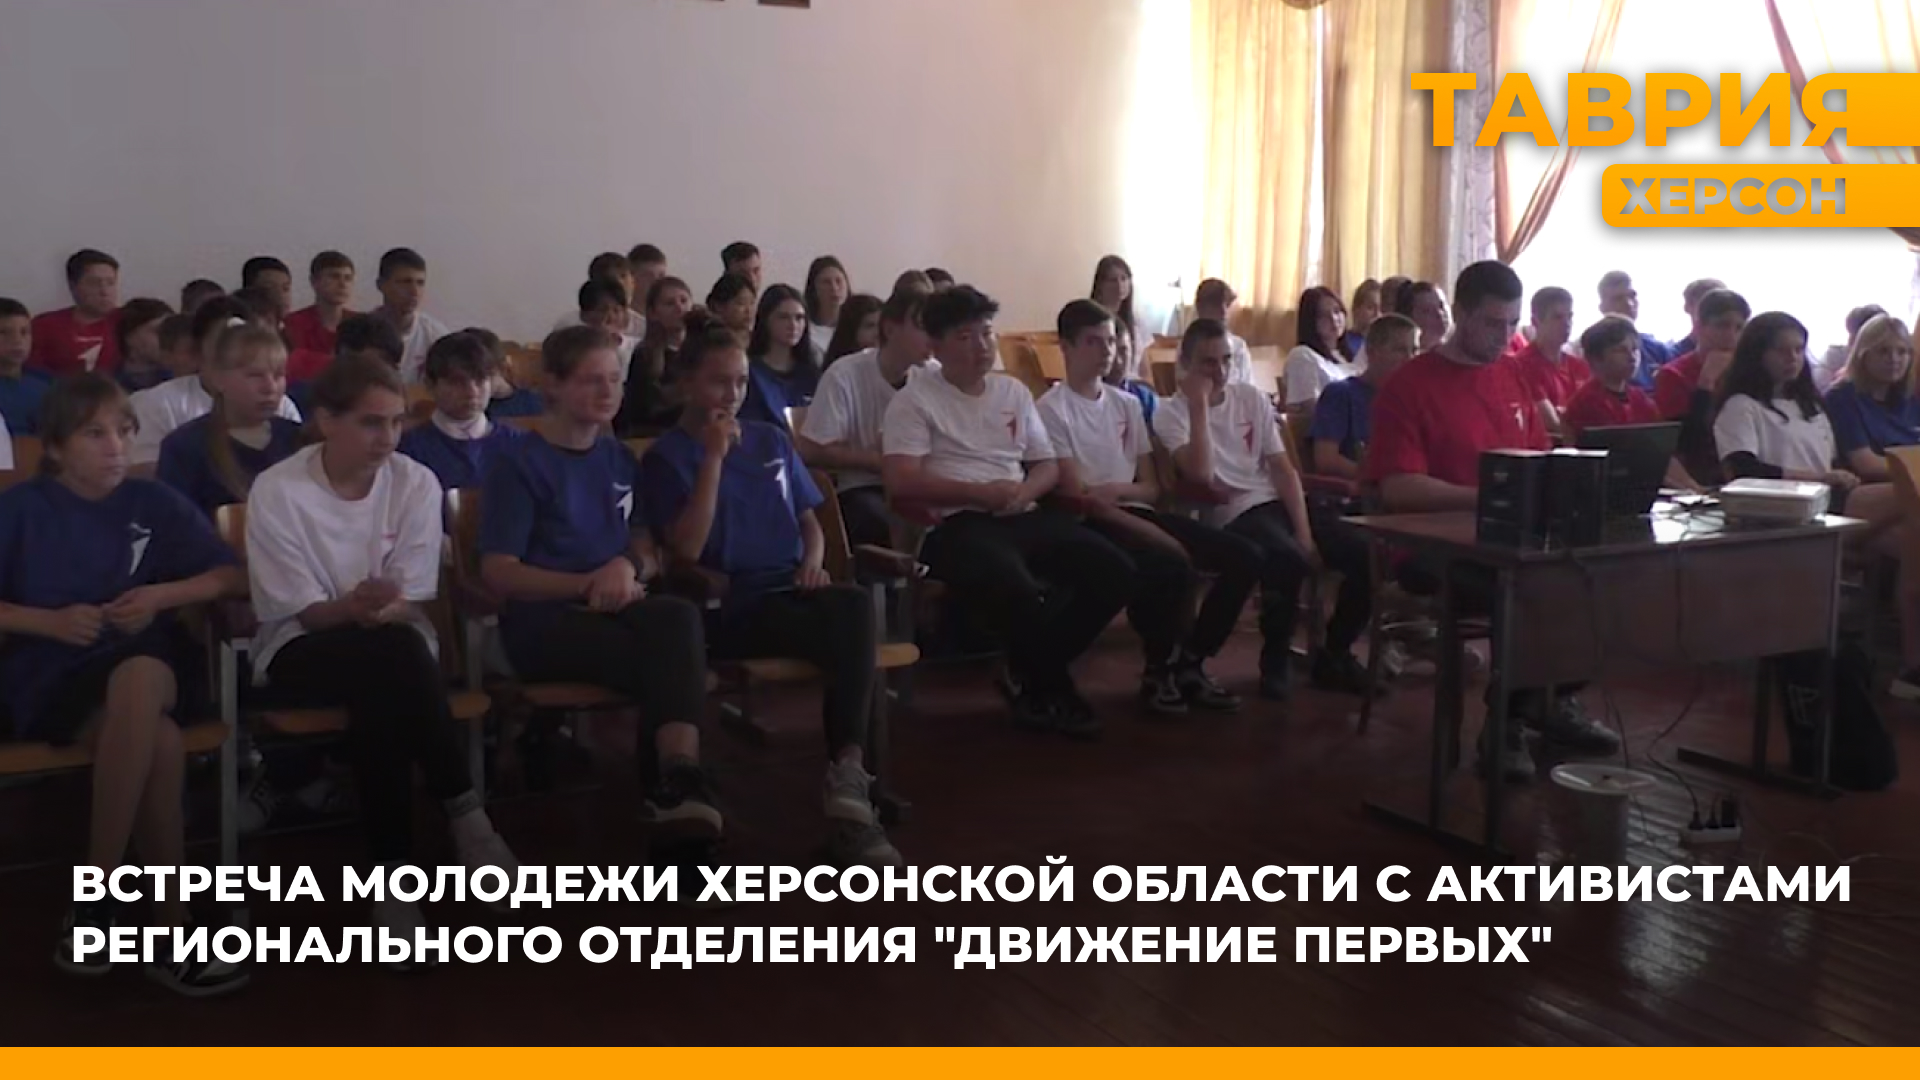 Активисты регионального отделения "Движение первых" организовали встречи с молодежью Херсонщины